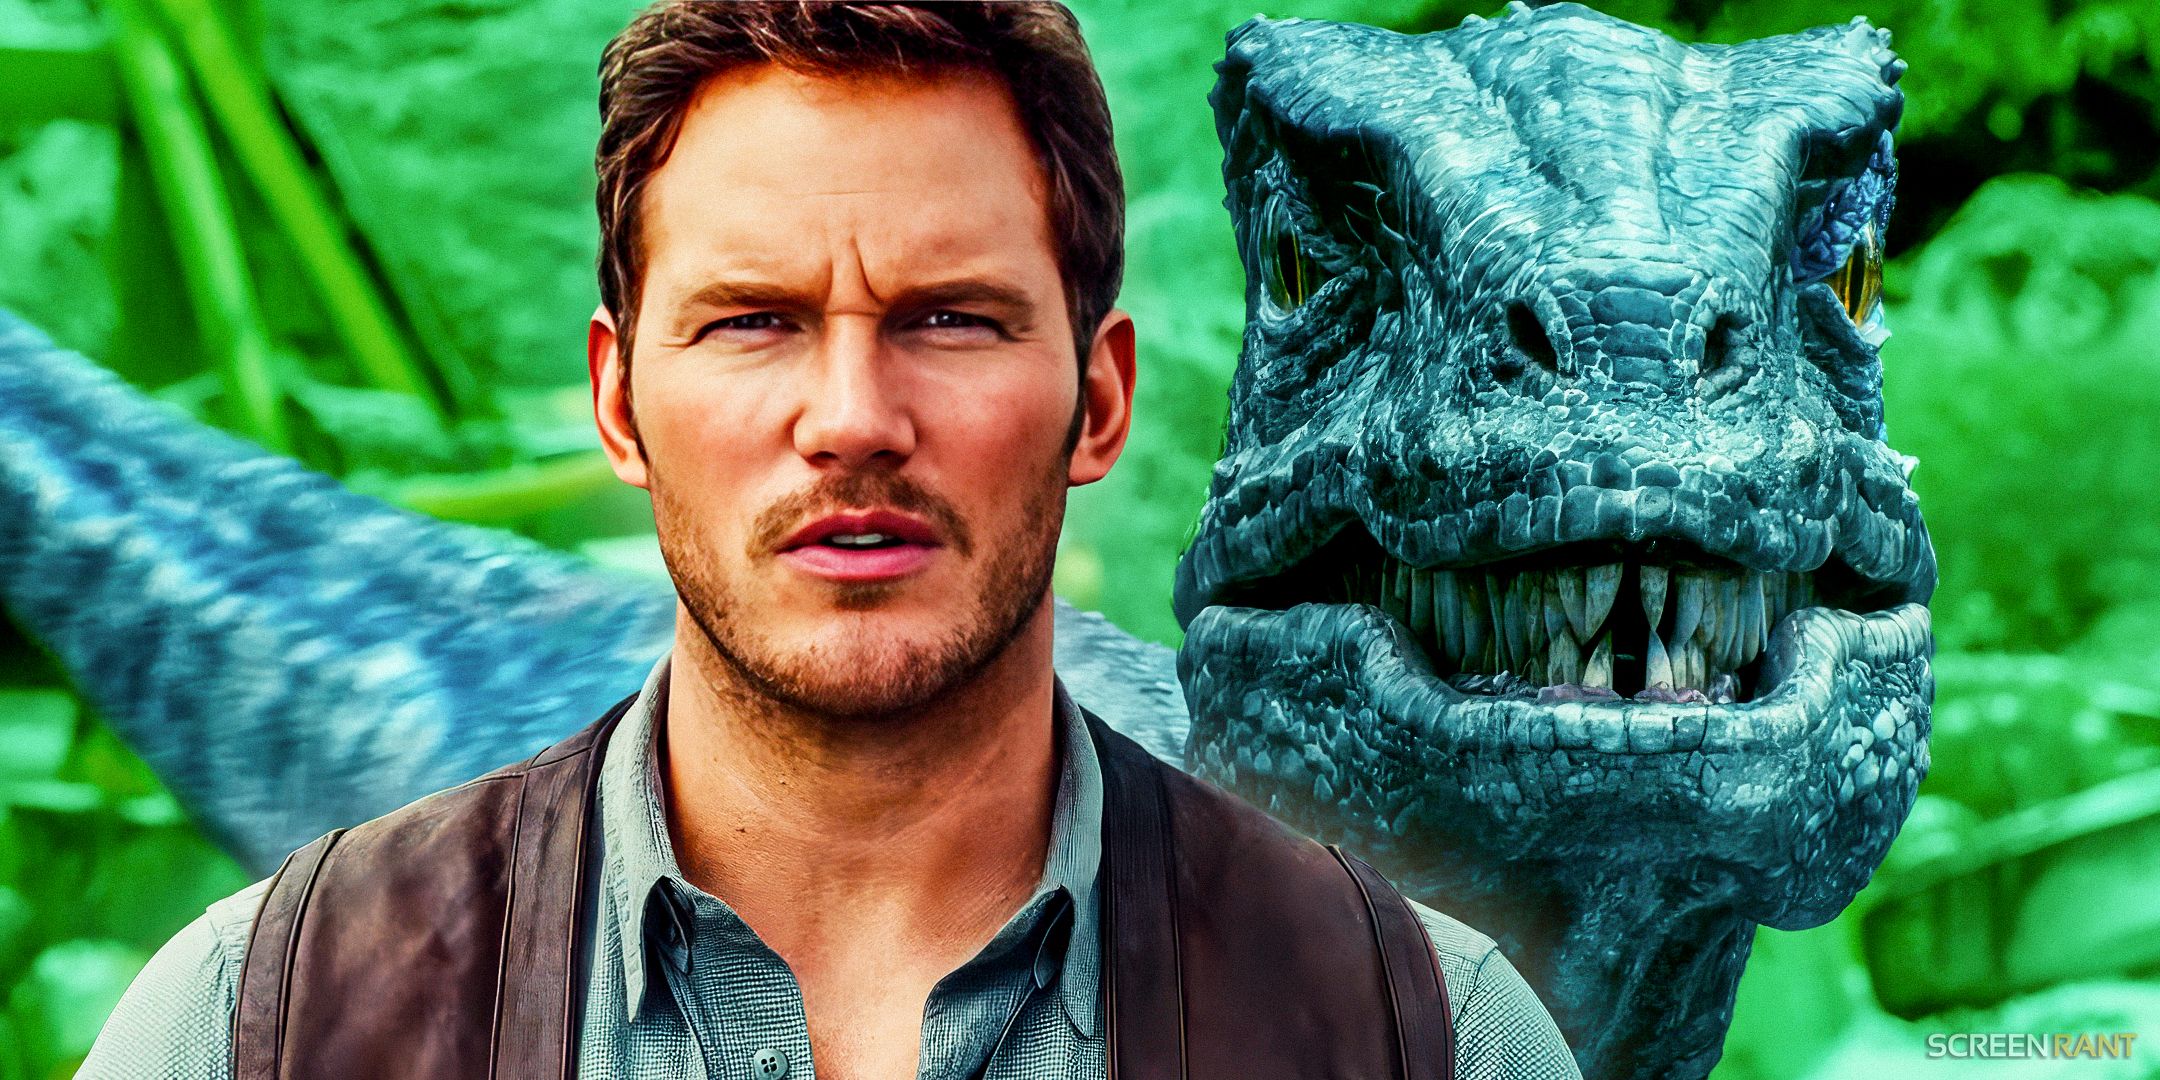 Chris Pratt as Owen Grady in Jurassic World alongside a raptor